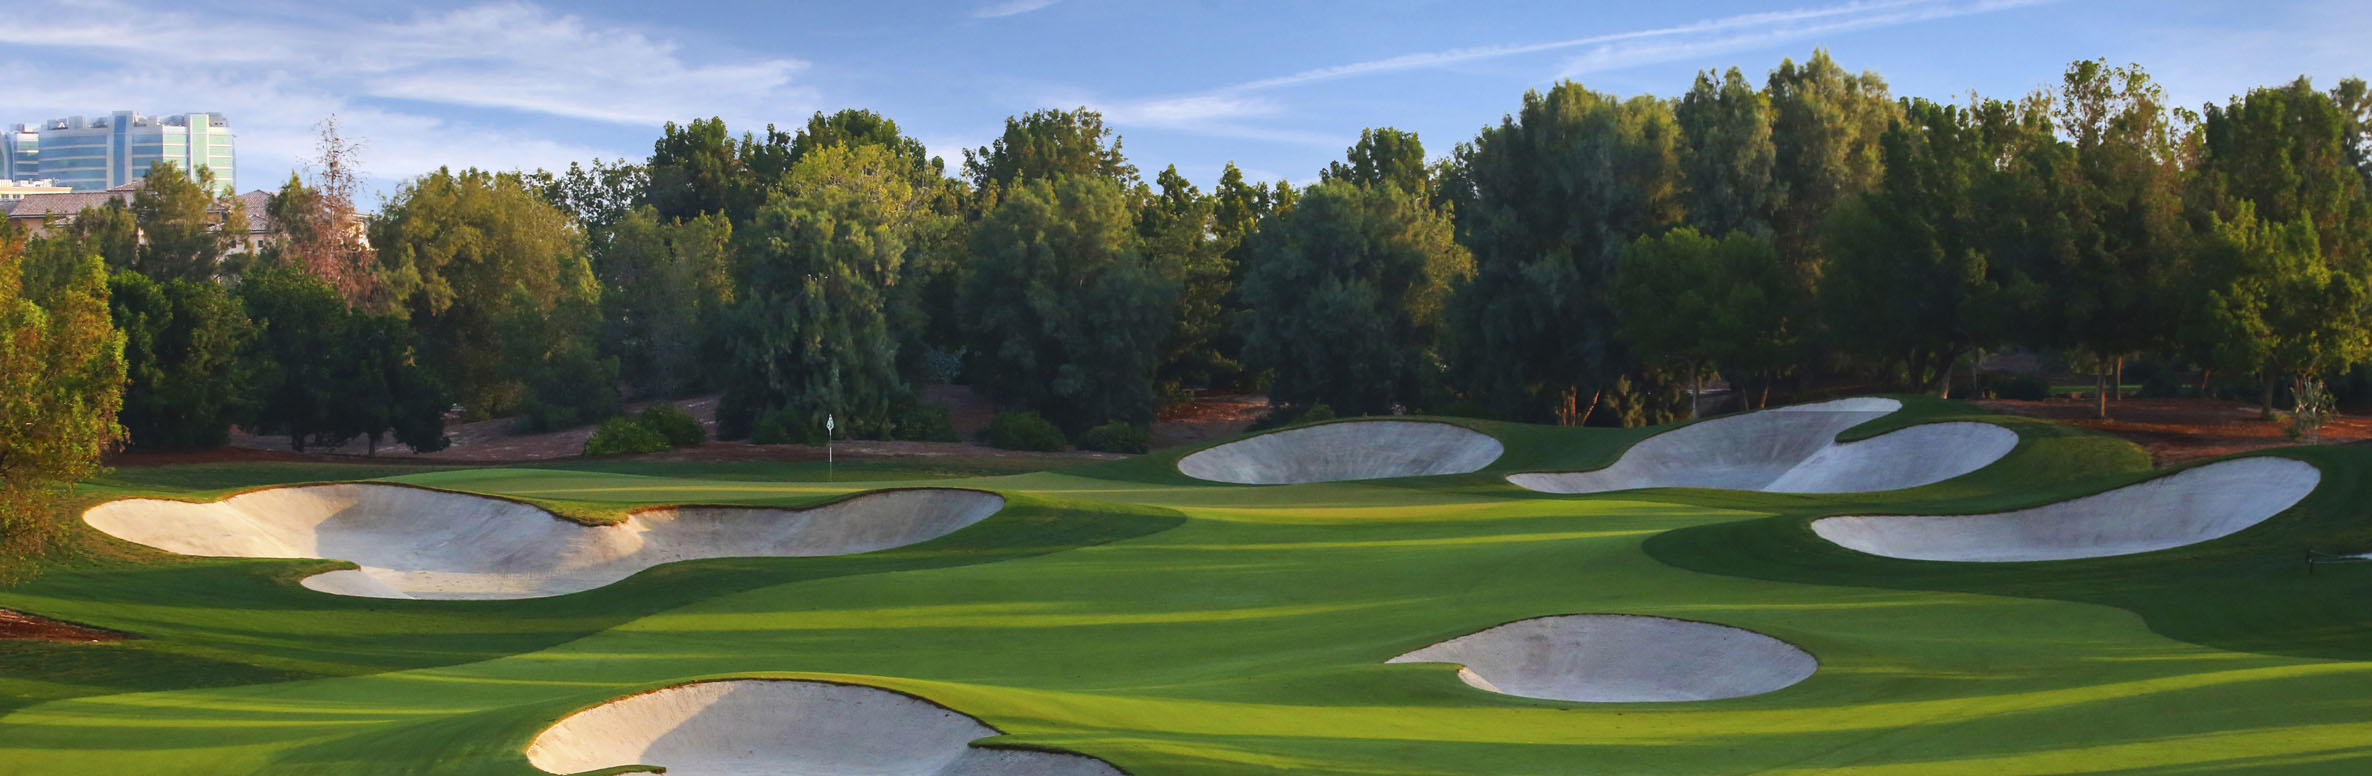 Golf Course Image - Jumeirah Golf Estates Earth No. 15